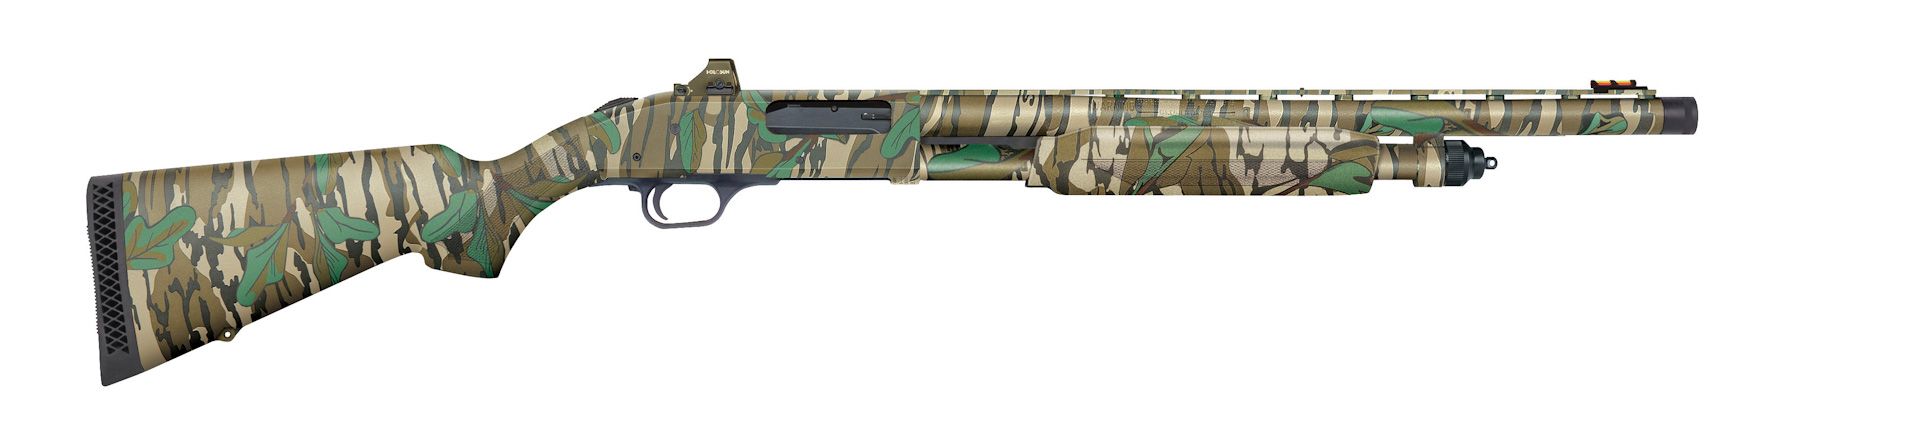 NEW Optic-Ready Holosun Combo Mossberg 500 & 835 Turkey Guns